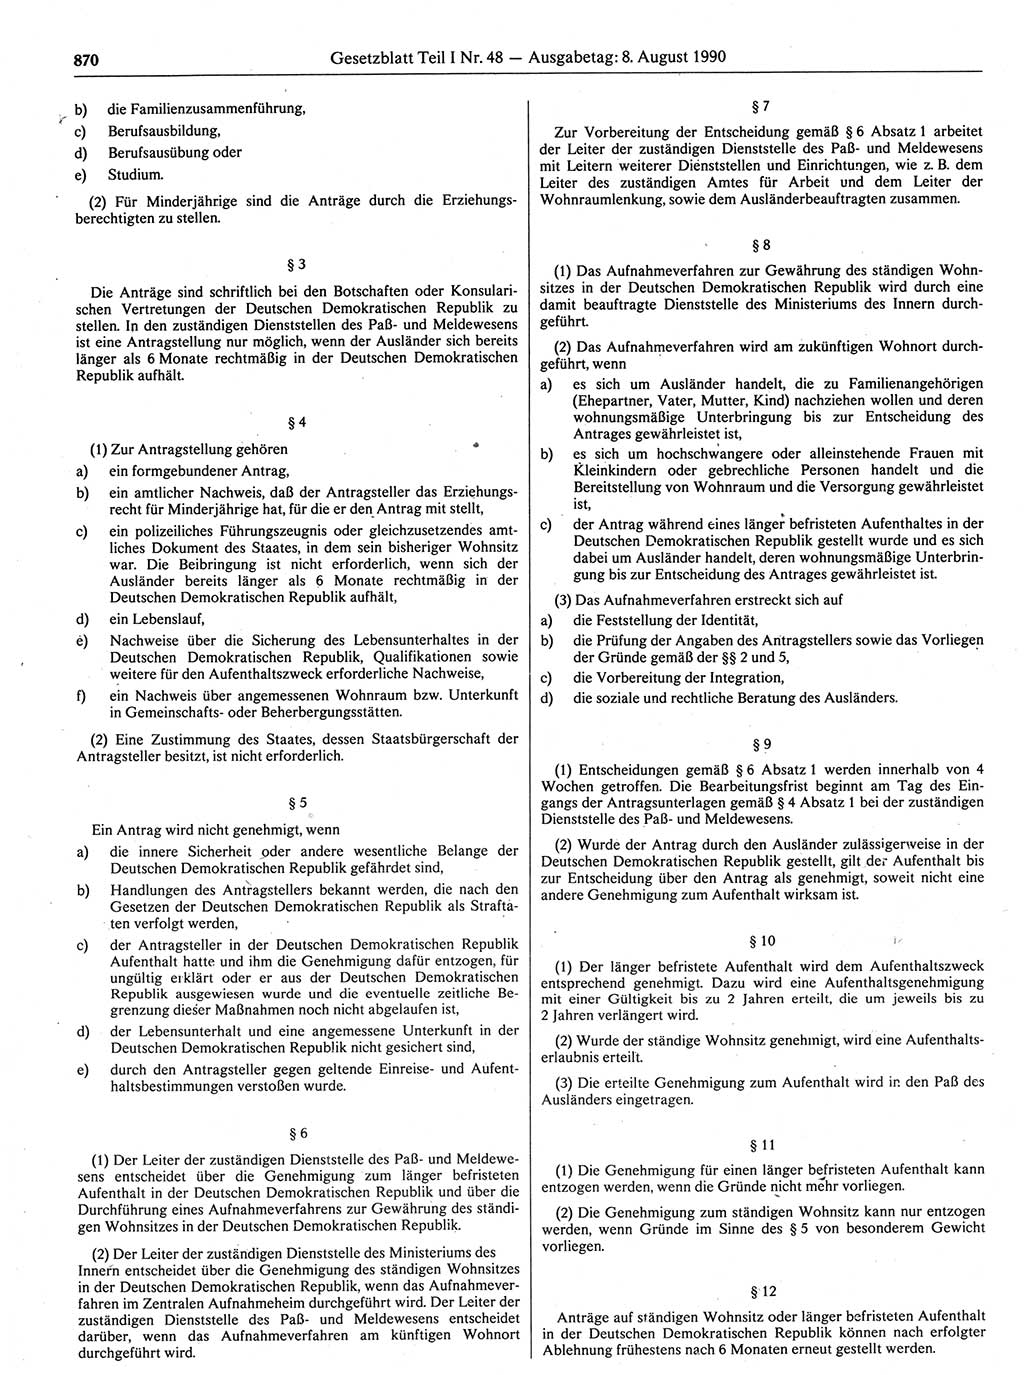 Gesetzblatt (GBl.) der Deutschen Demokratischen Republik (DDR) Teil Ⅰ 1990, Seite 870 (GBl. DDR Ⅰ 1990, S. 870)